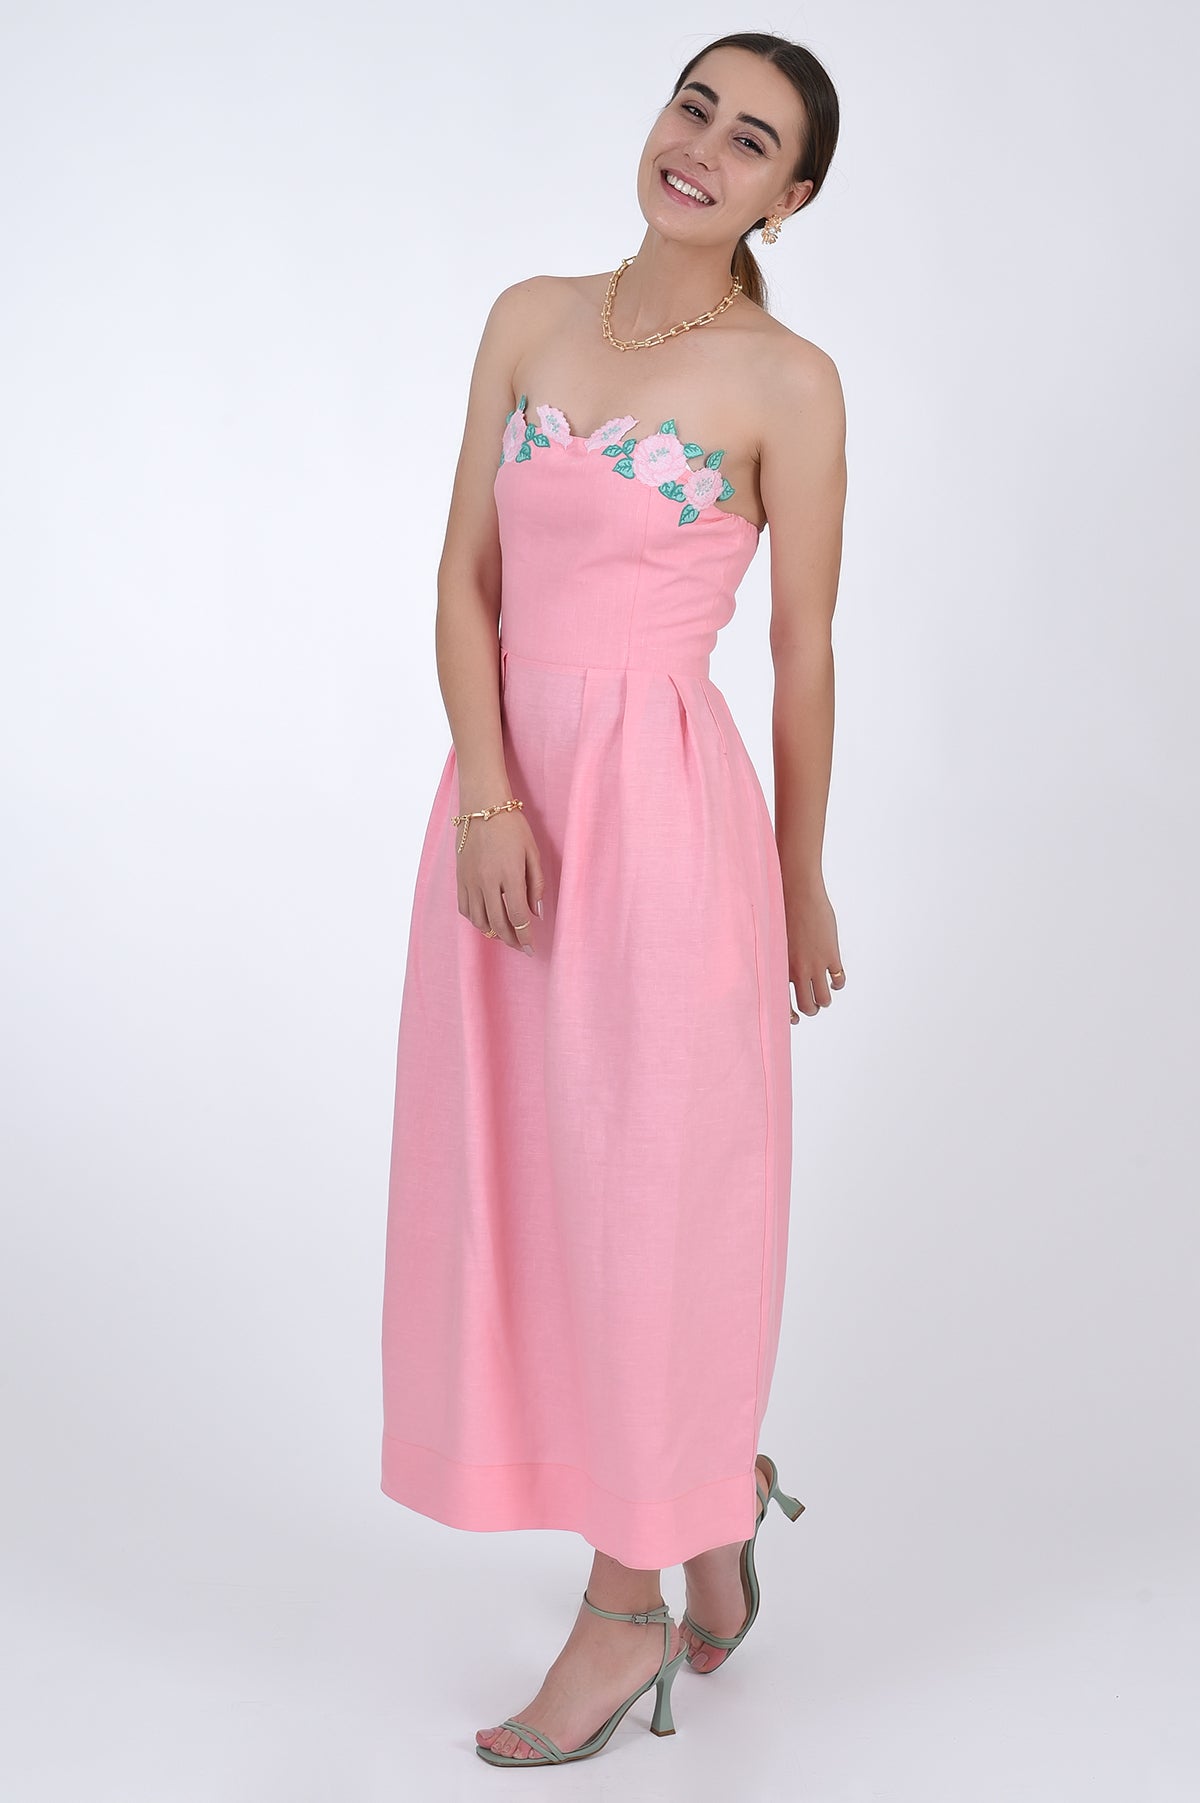 Strapless Linen Lorr Dress in Geranium Pink, Side View